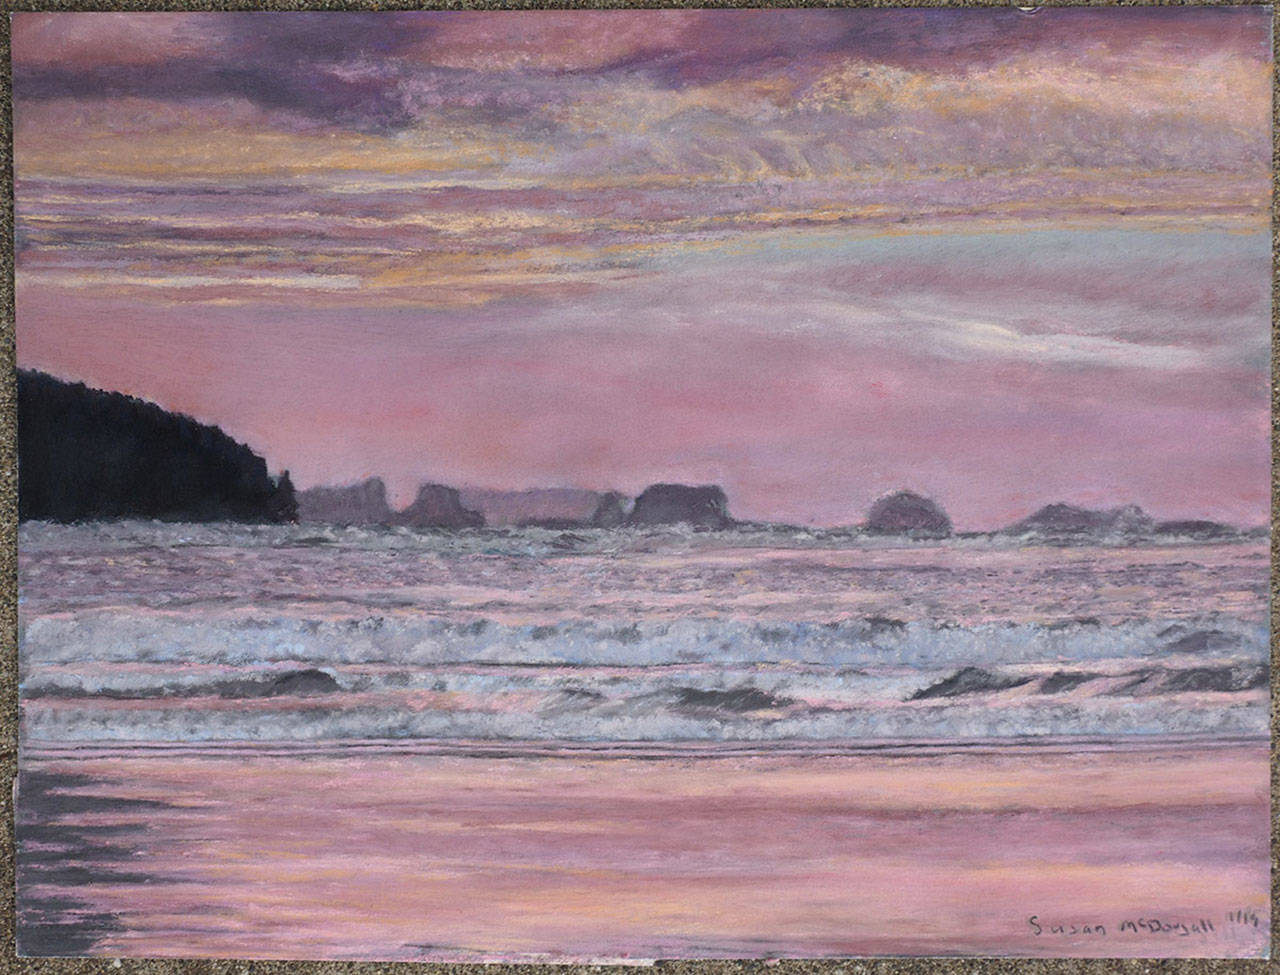 “Hobuck Beach” by Susan McDougall, featured artist at Sequim Museum Arts.